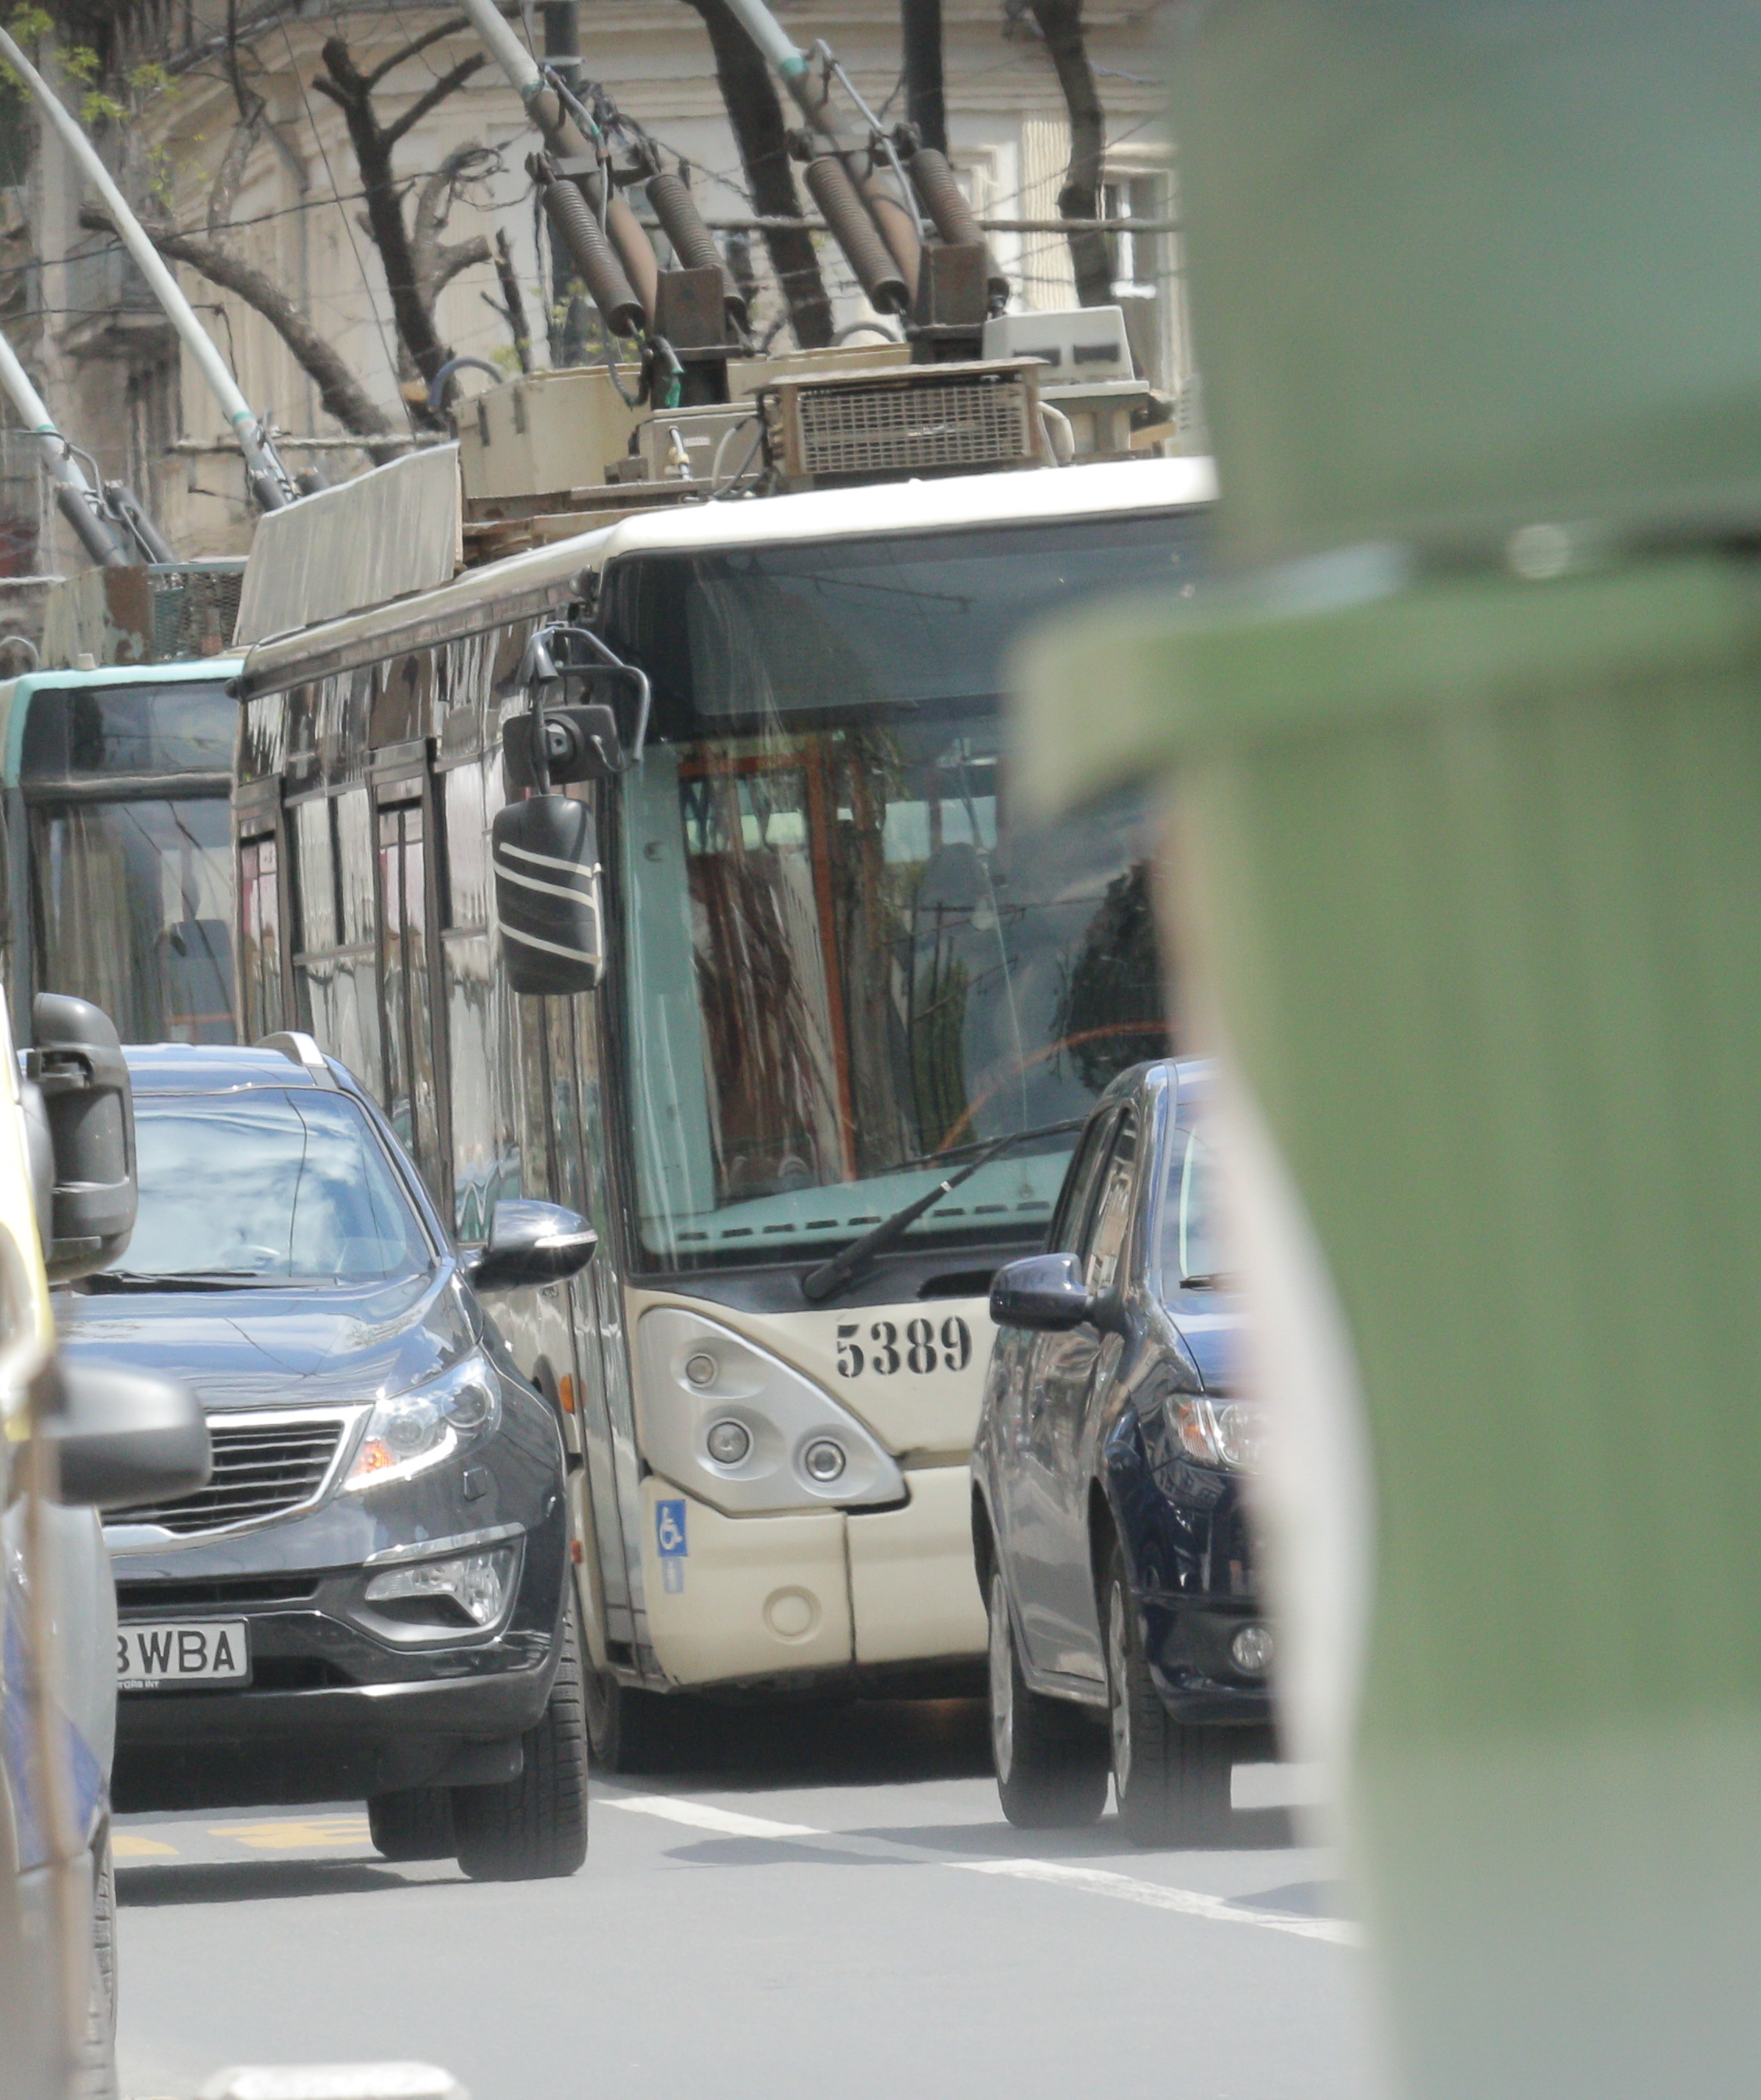 Femeia a blocat cu SUV-ul din dotare banda special facuta pentru autobuze